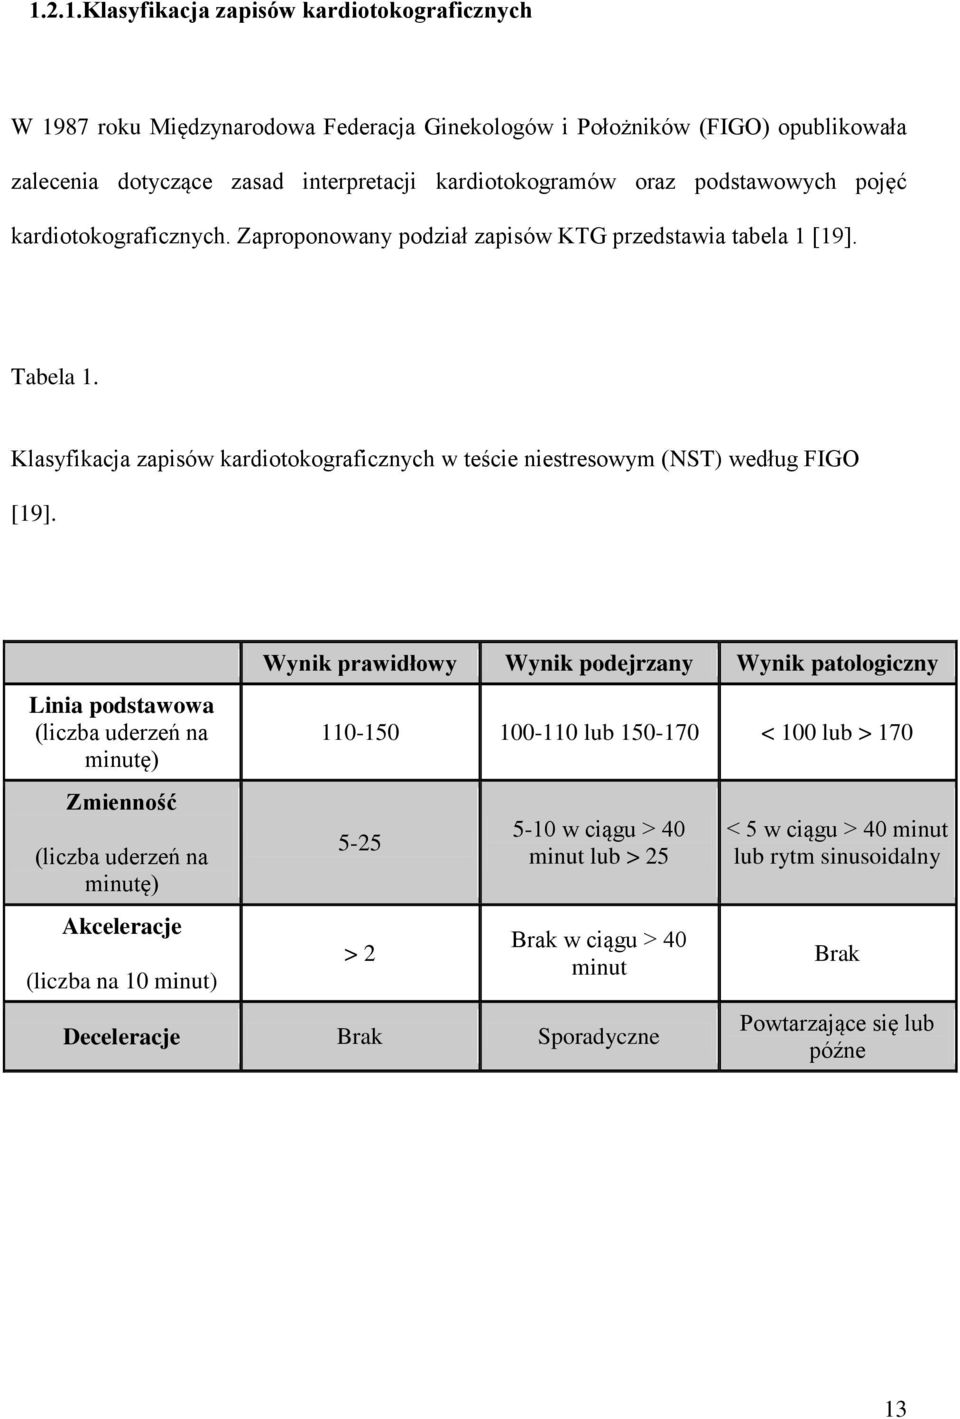 Klasyfikacja zapisów kardiotokograficznych w teście niestresowym (NST) według FIGO [19].